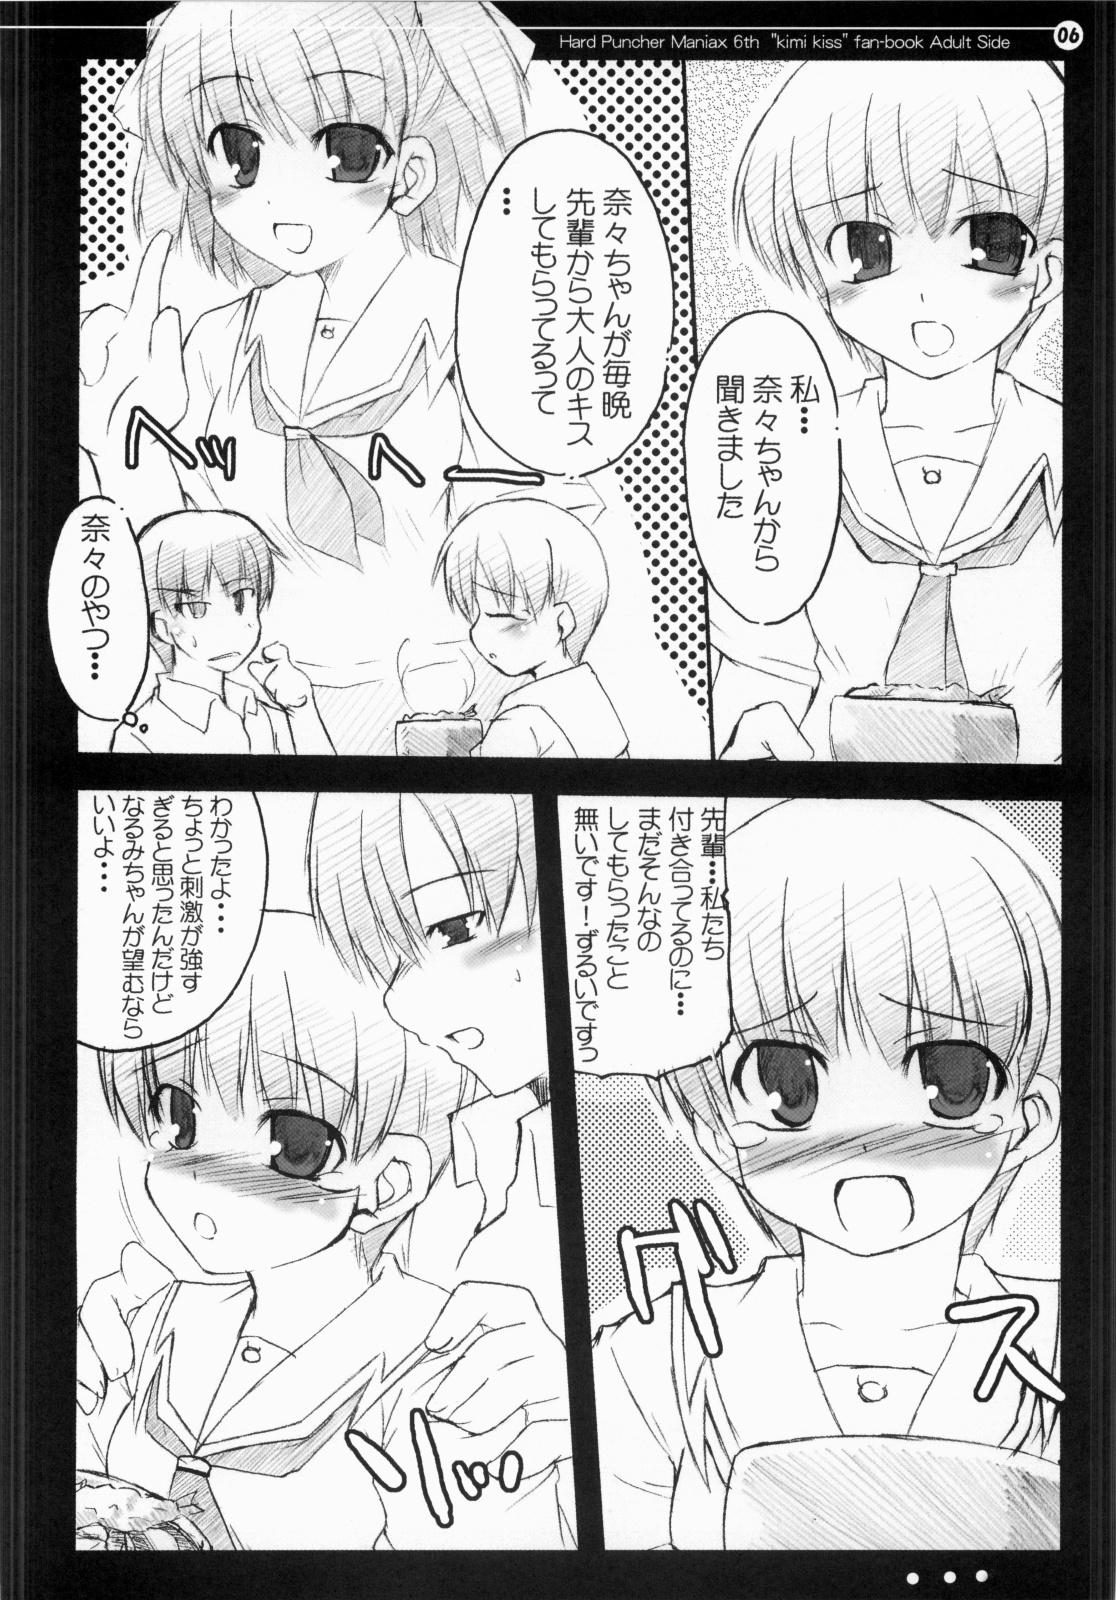 Nalgas Nana to Narumi no Motto Kisu Shite!! - Kimikiss Masturbates - Page 5